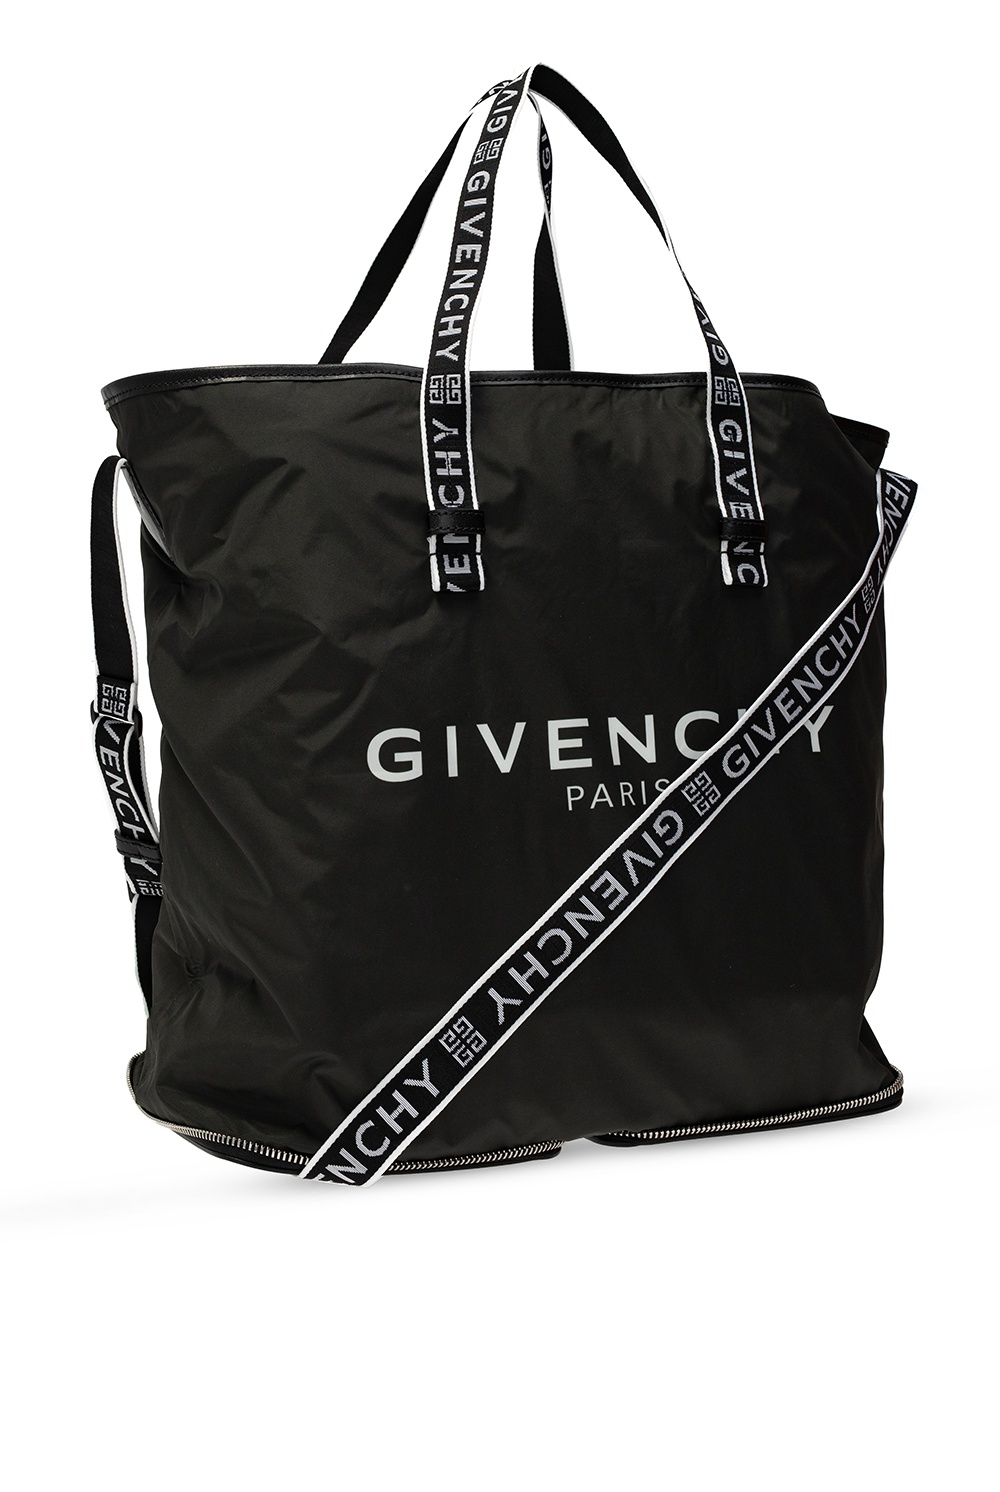 4G nylon tote bag in black - Givenchy